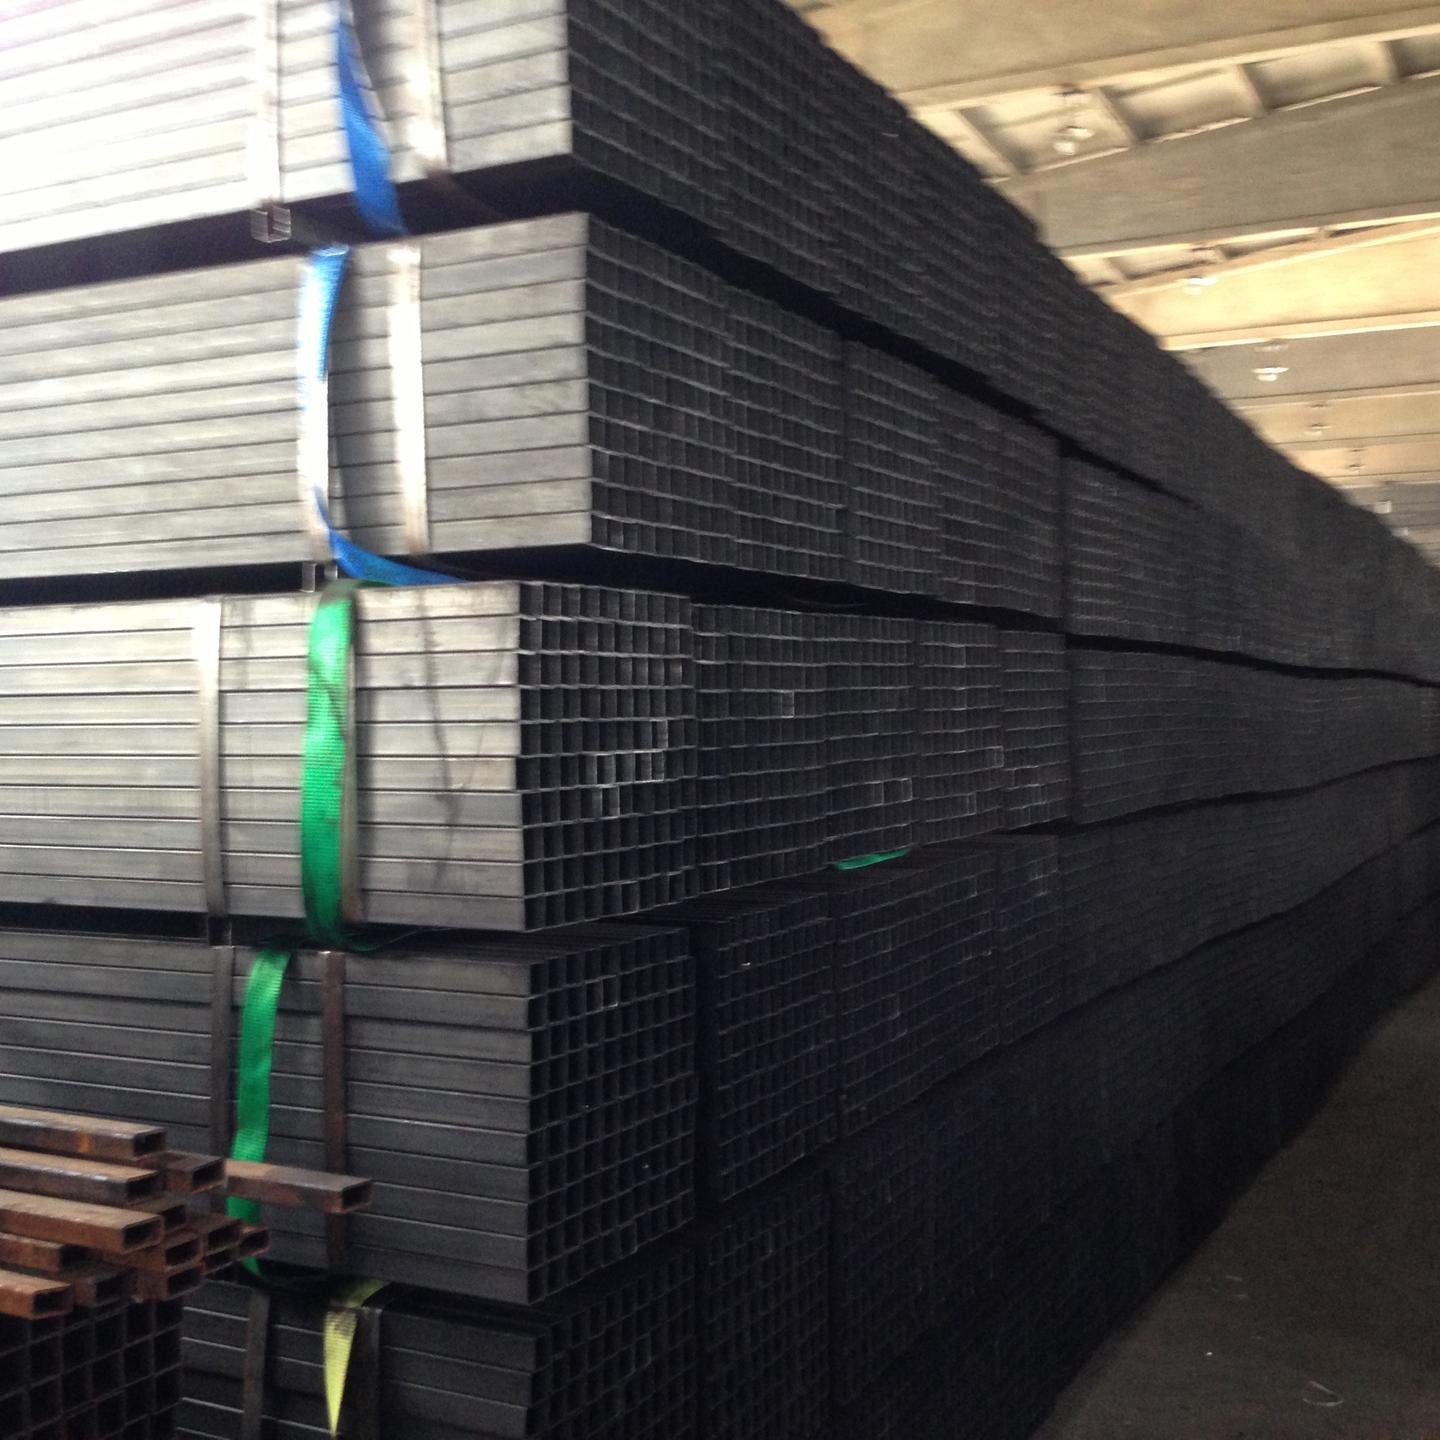 天津腾越钢铁有限公司主营销售 黑方管 焊接方管 涂油方管 3030 Q235材质  可根据产品标准及客户需求定做